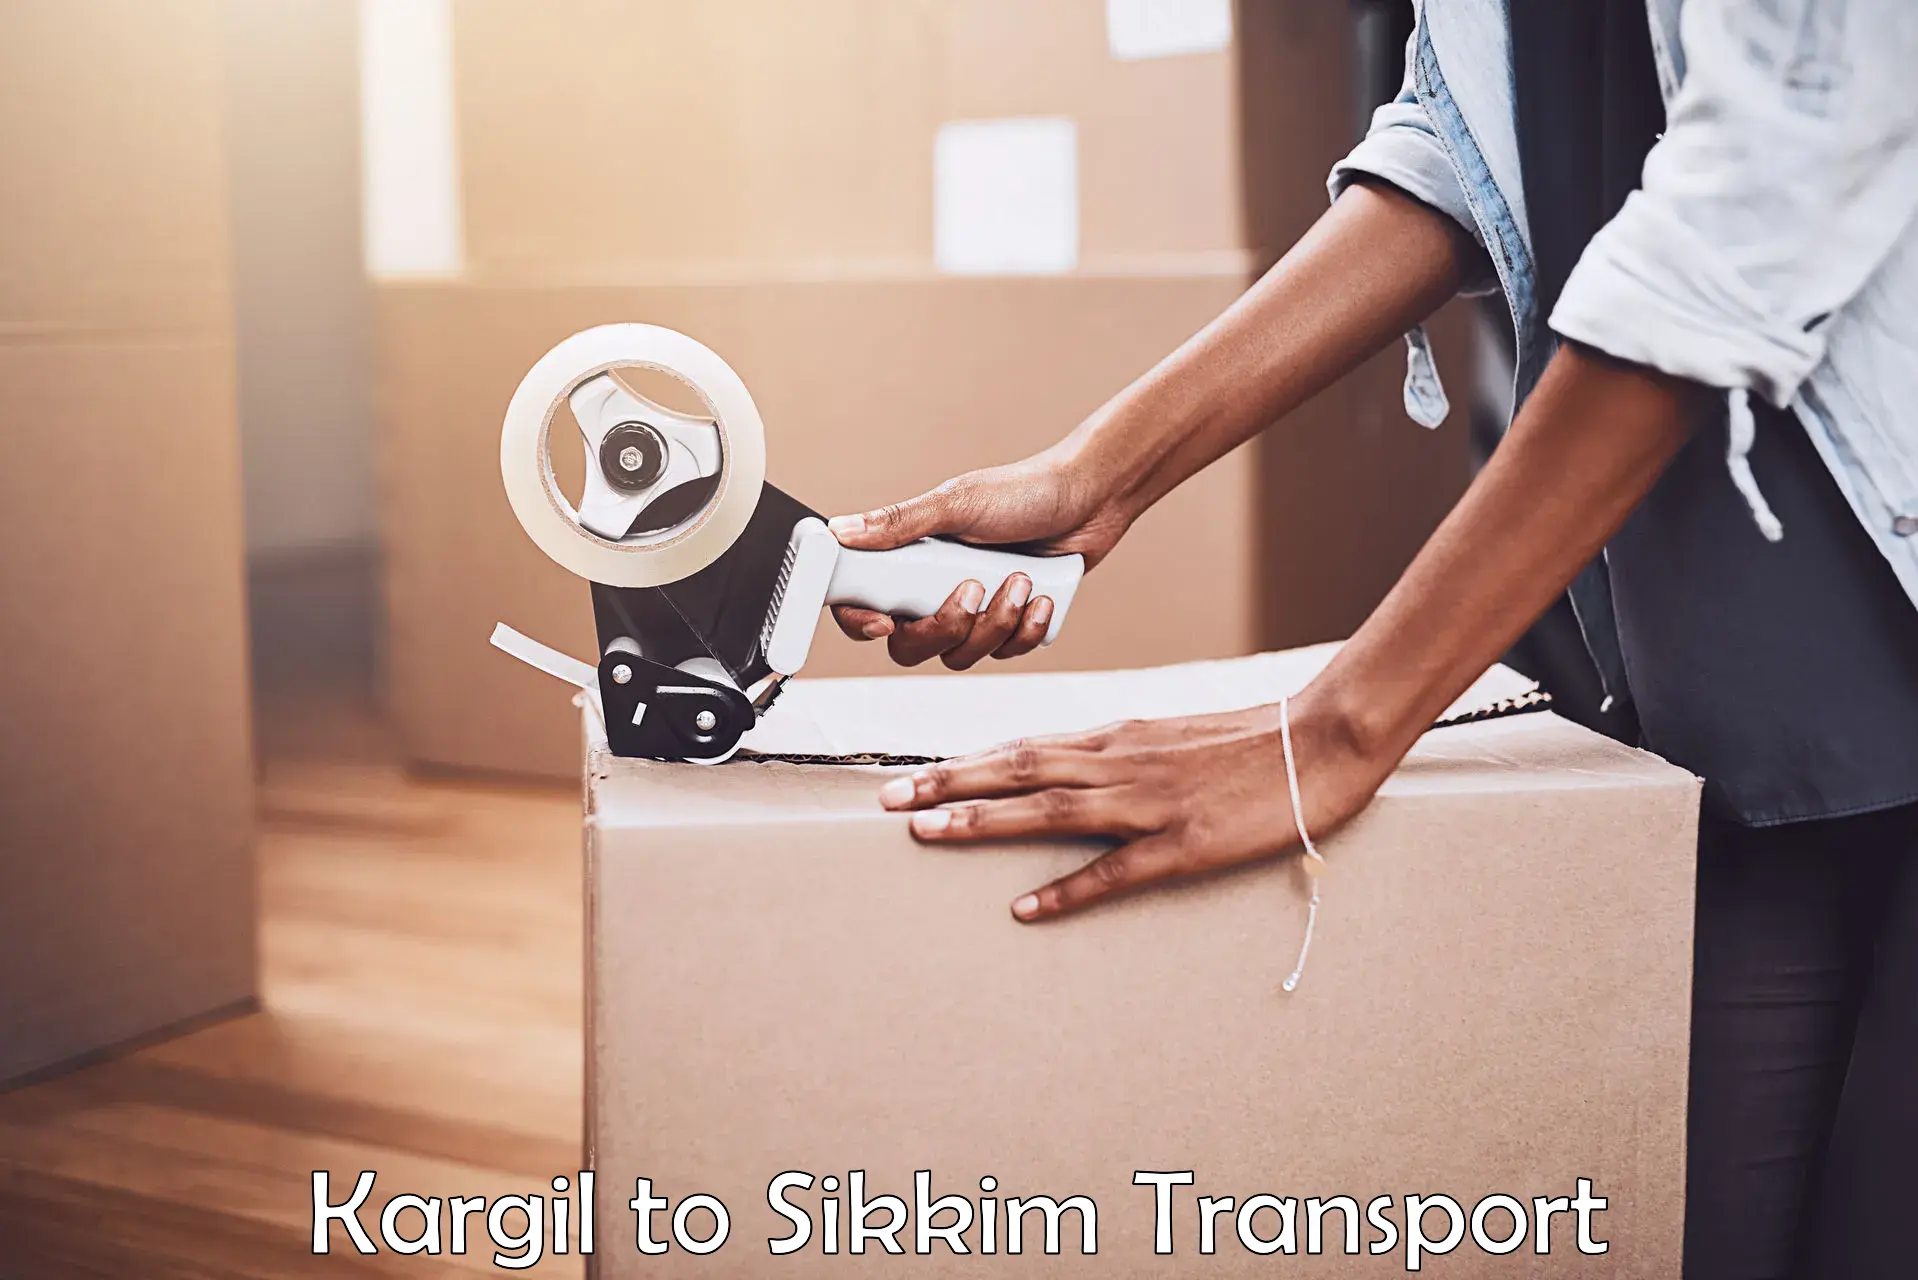 Nationwide transport services Kargil to Pelling